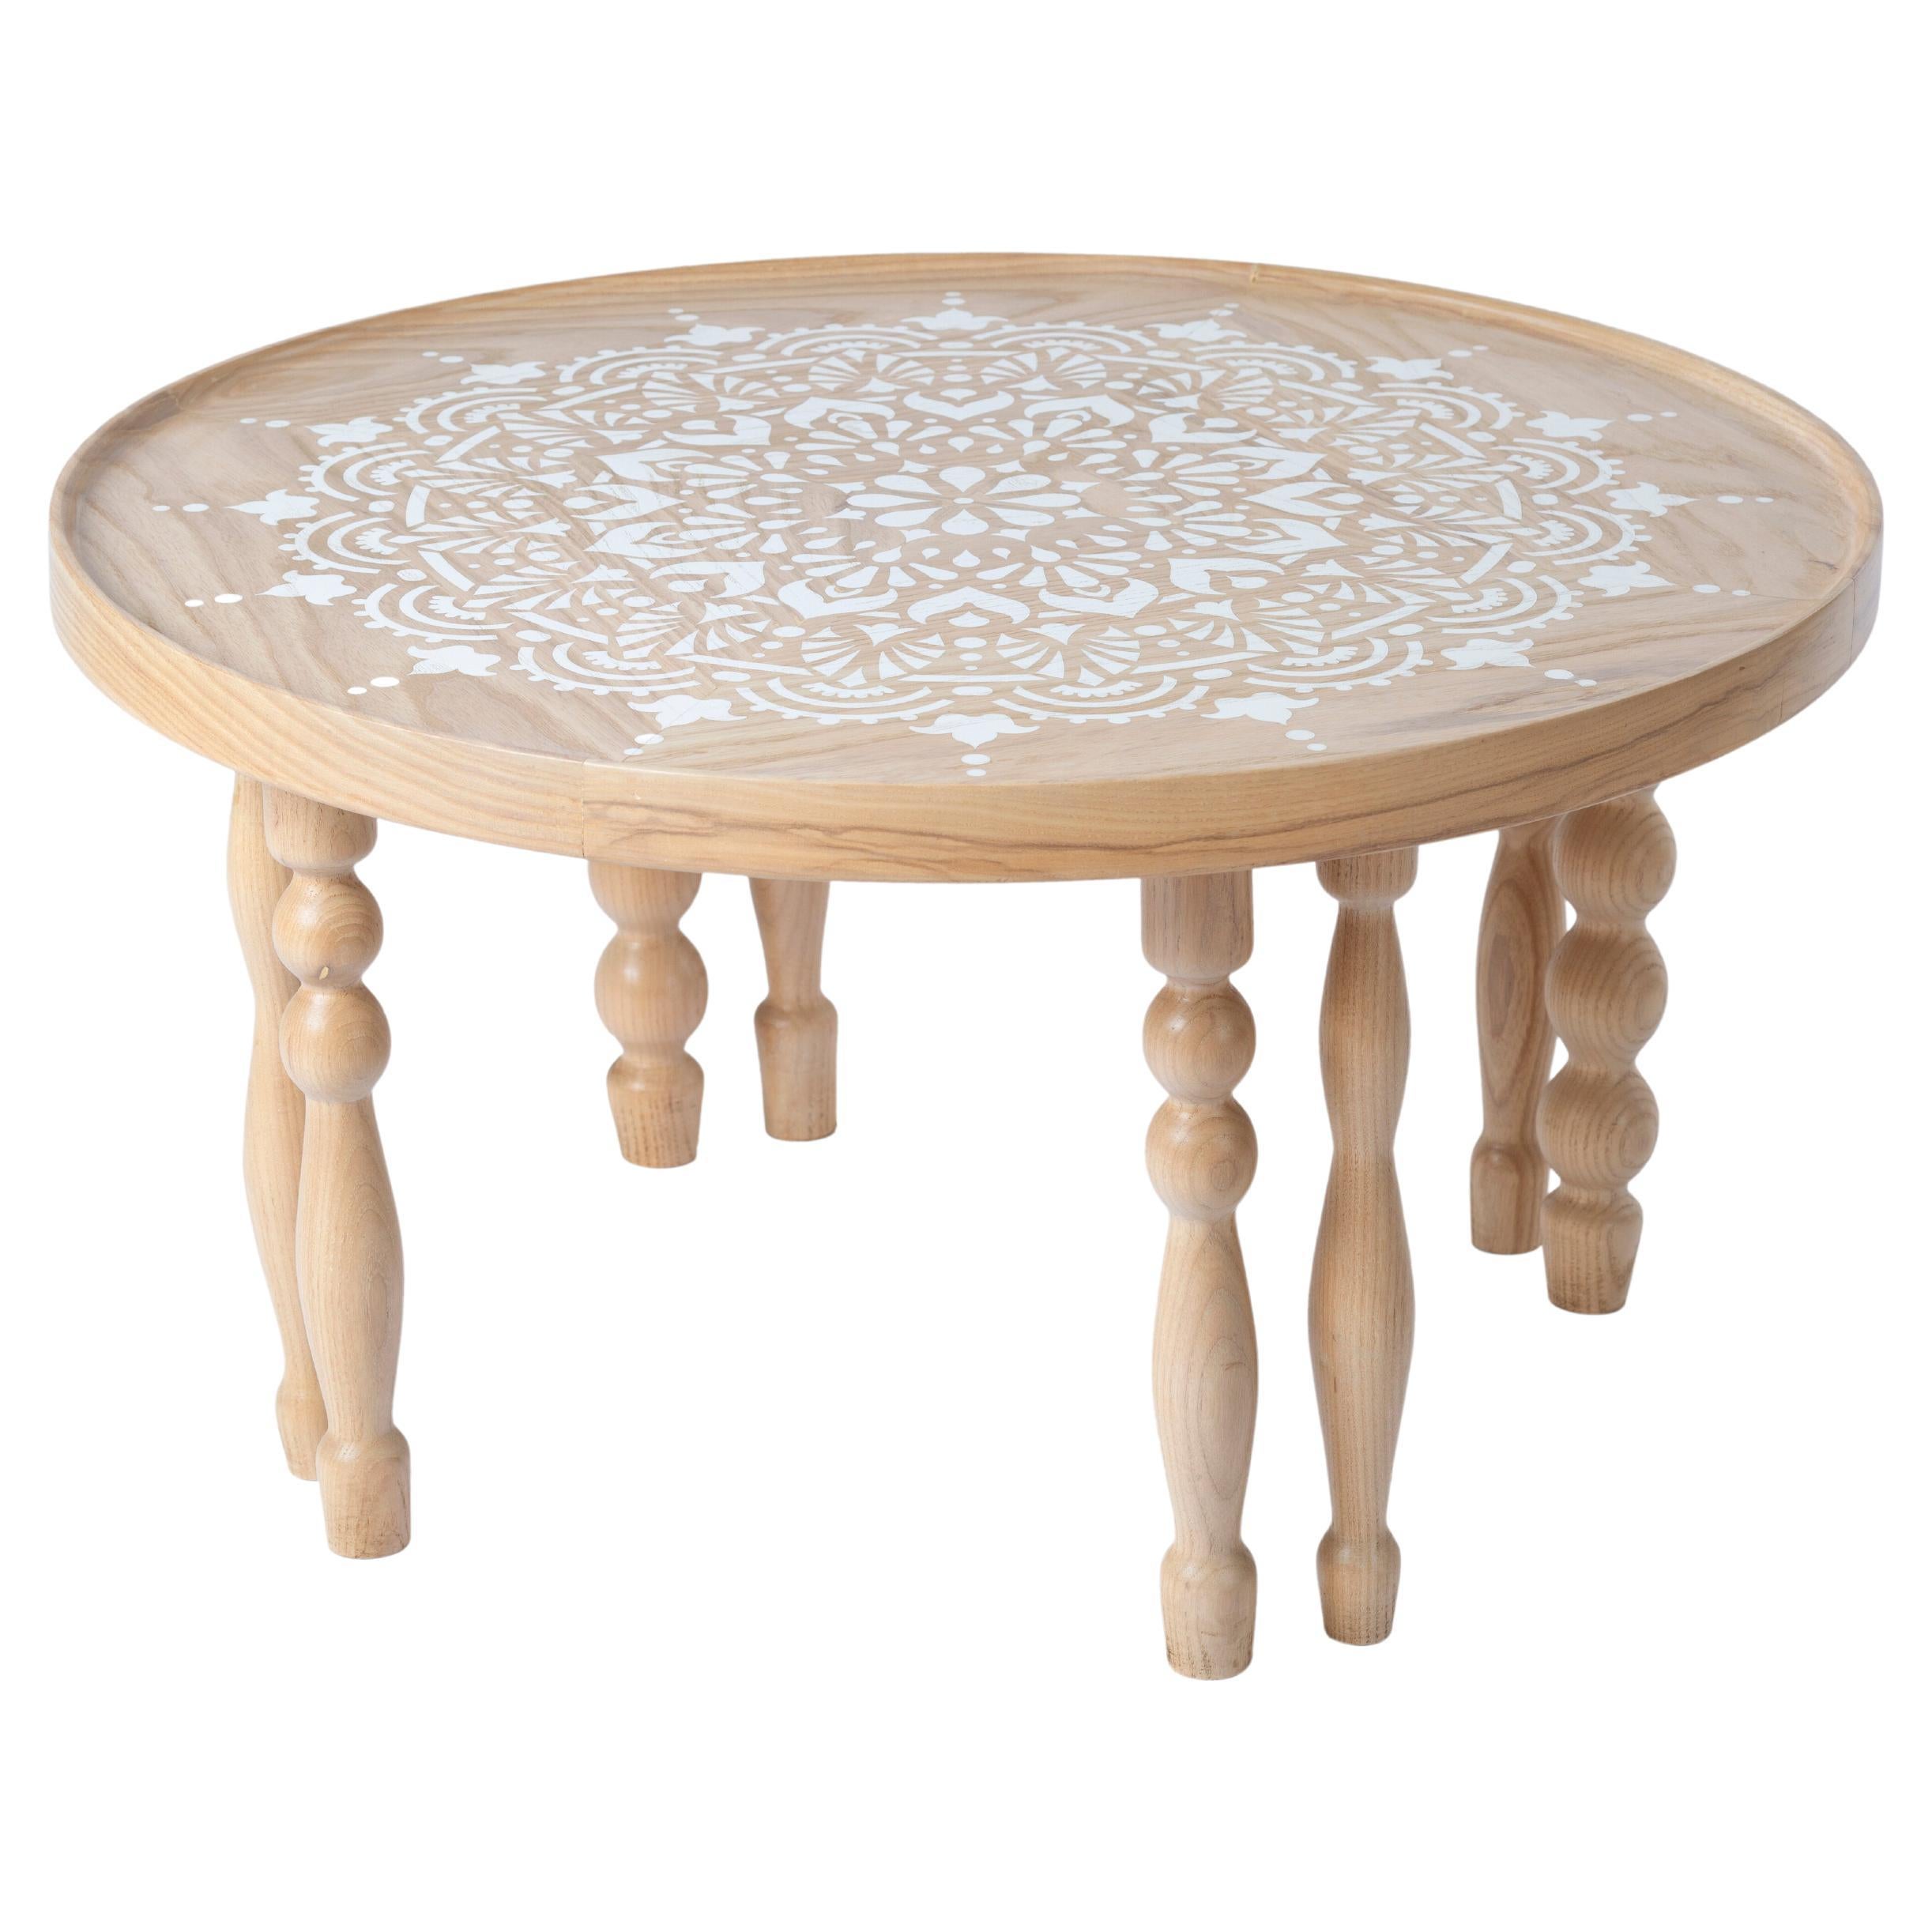 Table basse en bois de frêne avec pieds d'inspiration arabesque et motif de Mandala essuyé